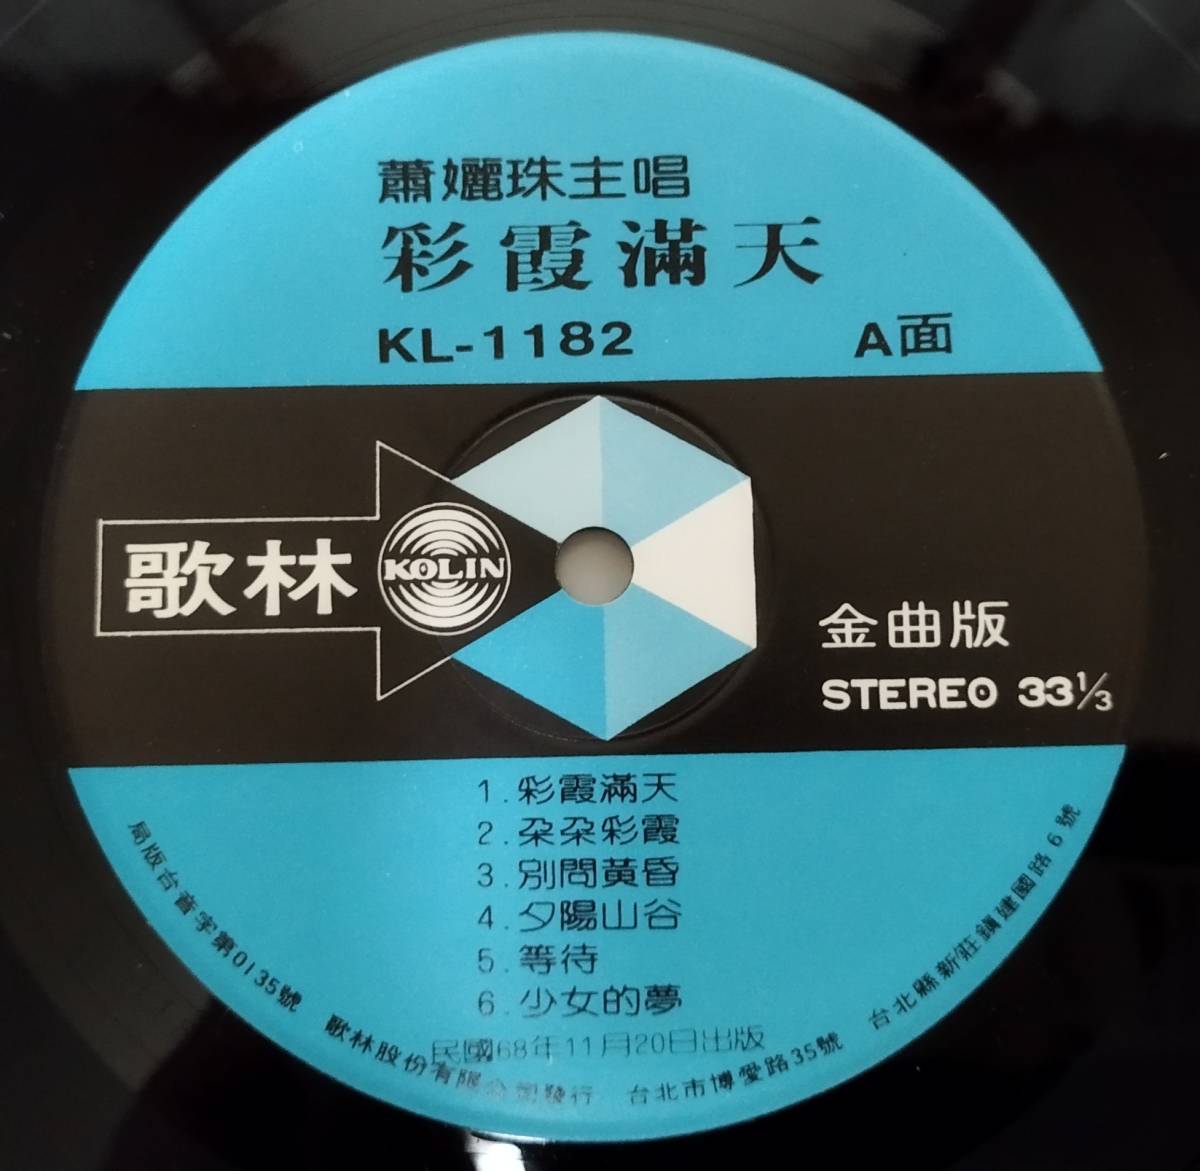 貴重「 蕭 女麗 珠 彩霞滿天 」台湾盤レコード 歌林唱片 KL-1182 中華ポップス 79年盤_画像3